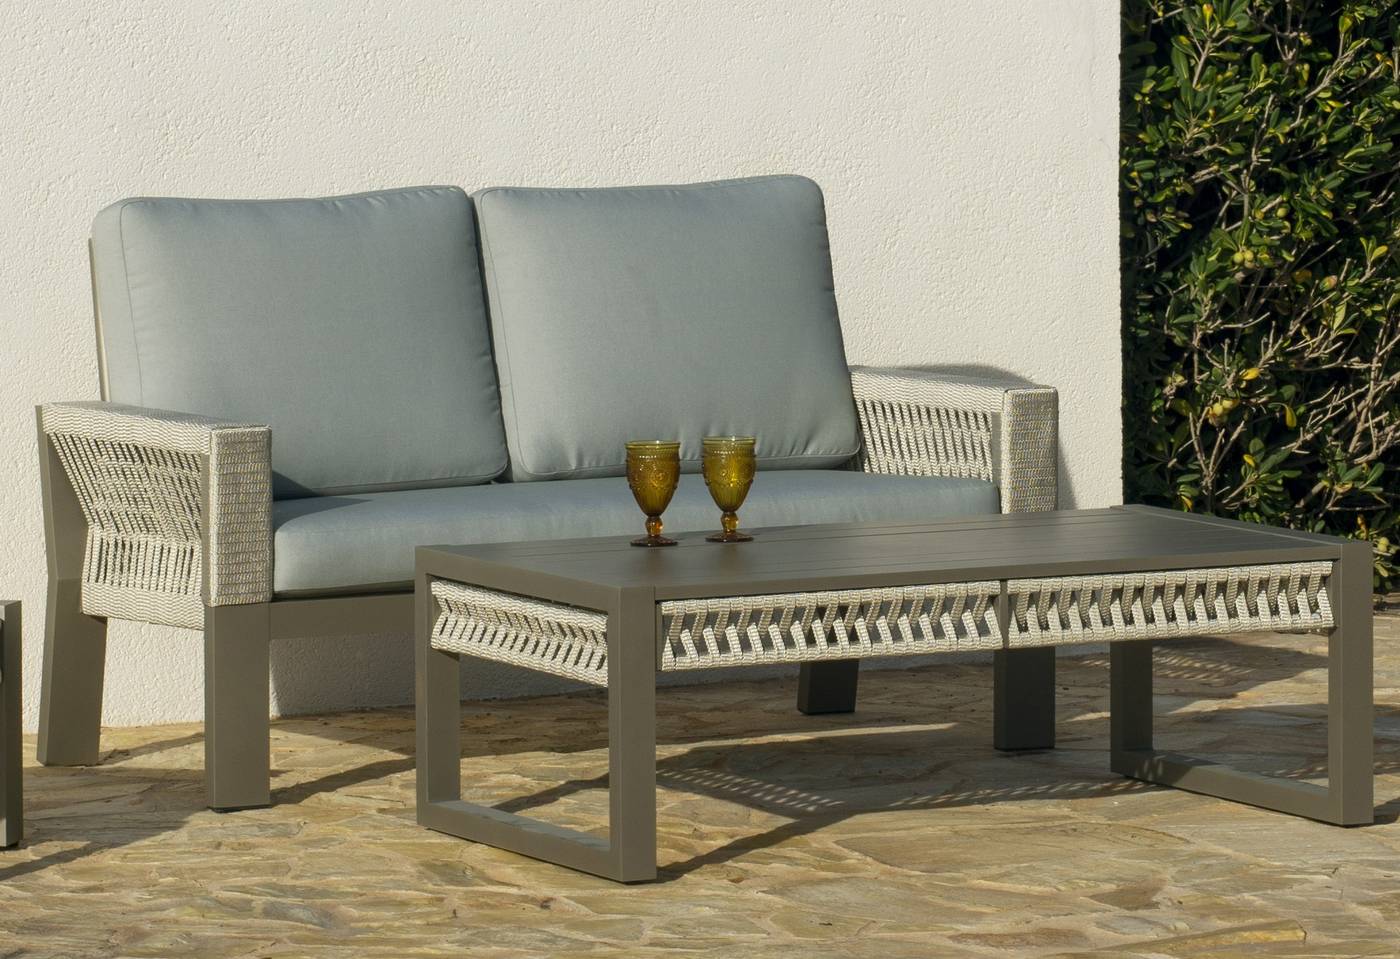 Set Aluminio Estambul-7 - Conjunto aluminio-cuerda: 1 sofá de 2 plazas + 2 sillones + 1 mesa de centro. Disponible en color blanco, gris, marrón o champagne.